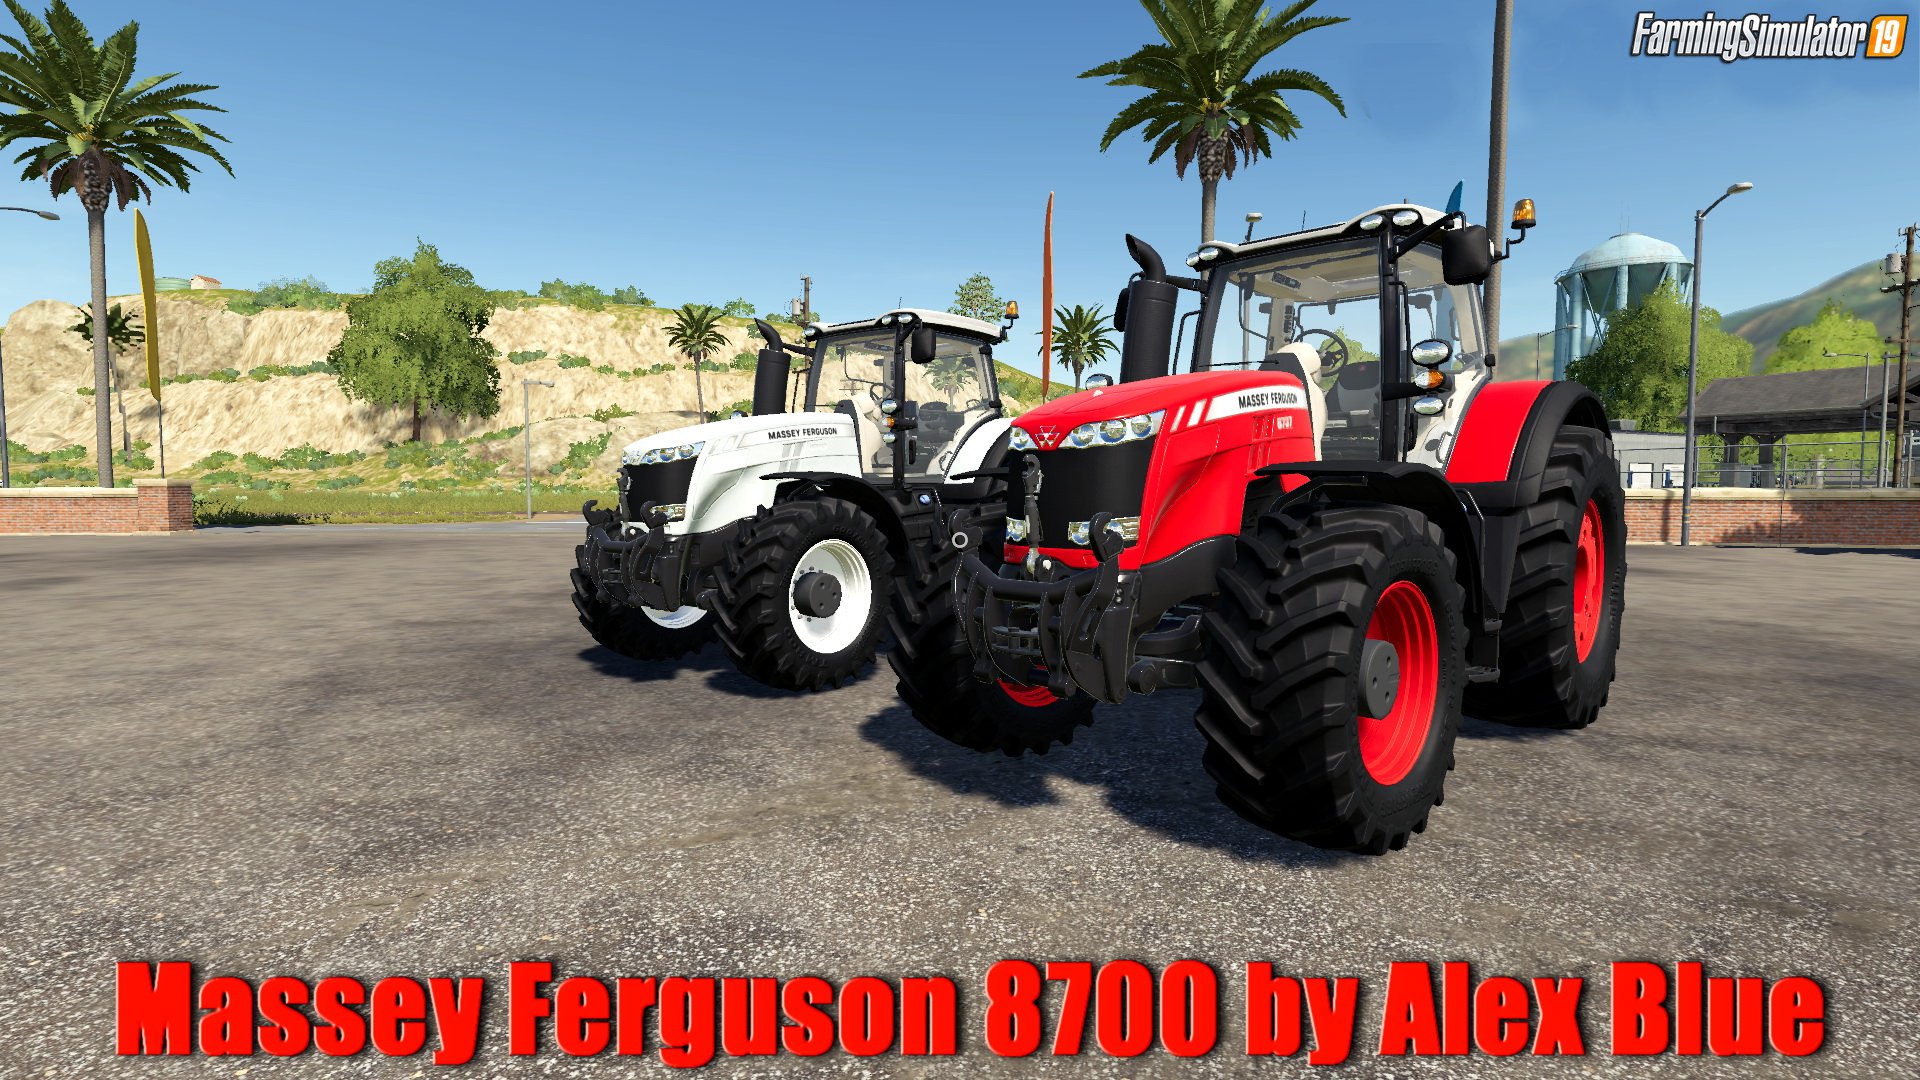 Massey Ferguson 8700 v1.0 by Alex Blue for FS19